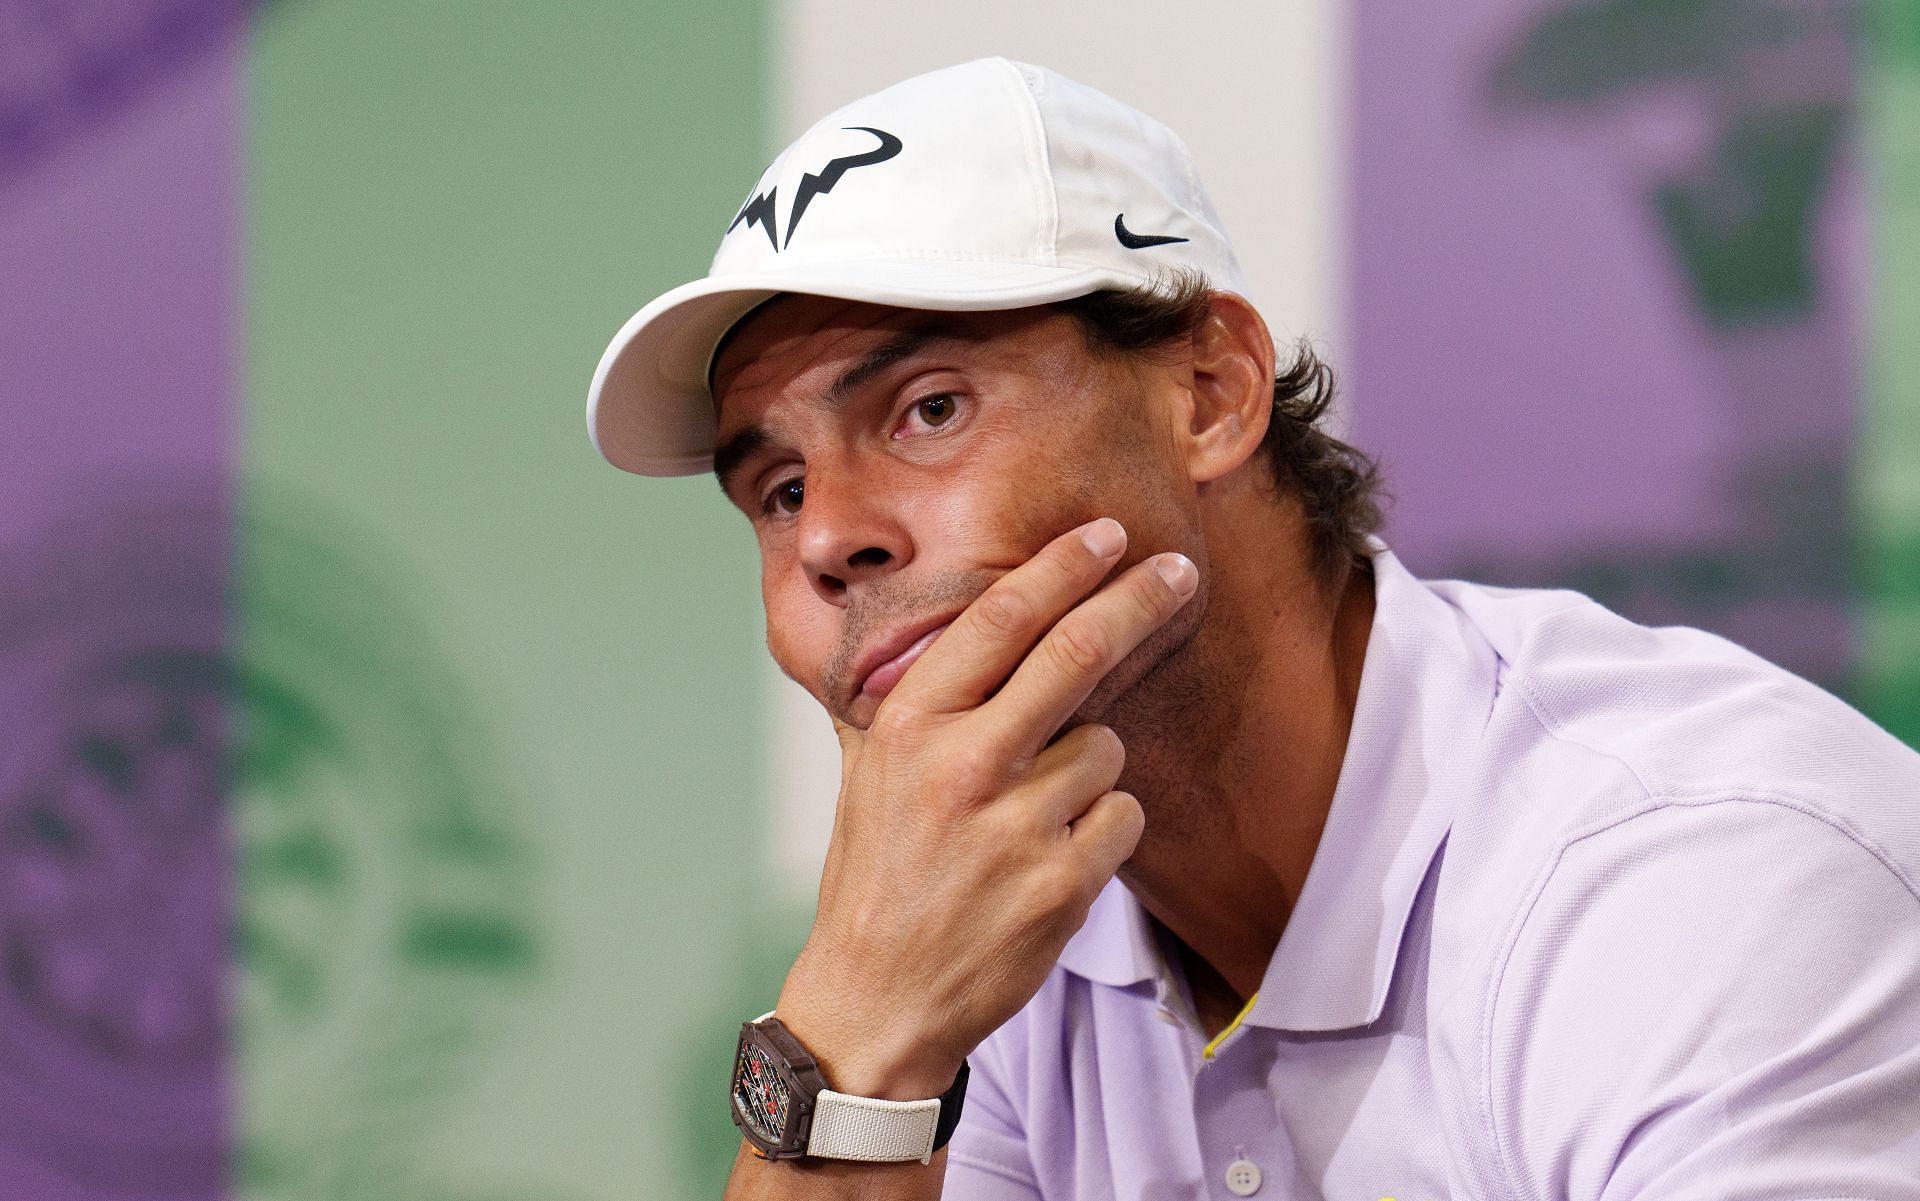 Rafael Nadal at the Wimbledon Championships this year